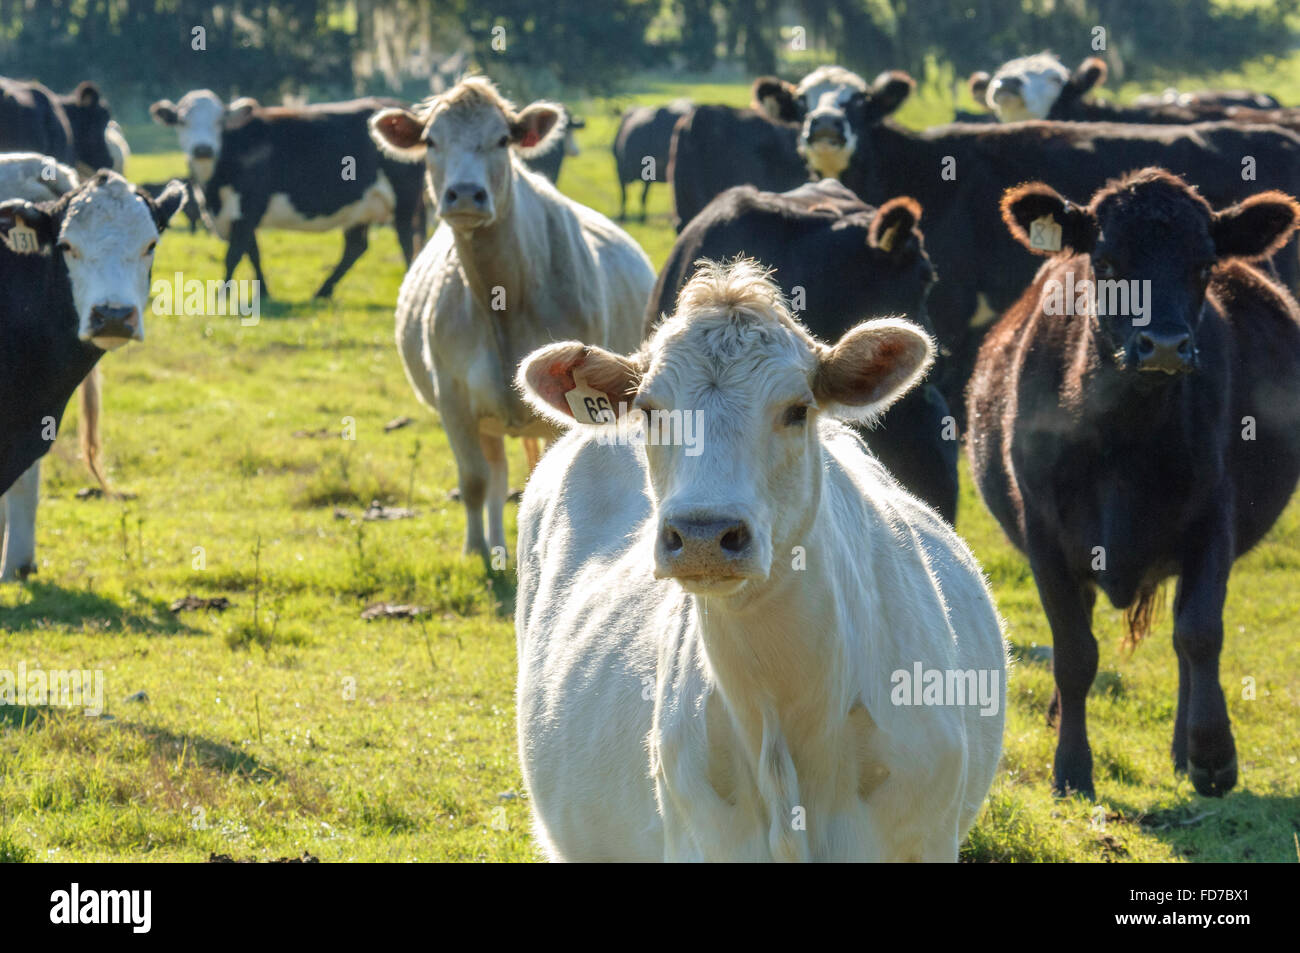 Comercial de ganado vacuno ganado en pastoreo de pasto Foto de stock